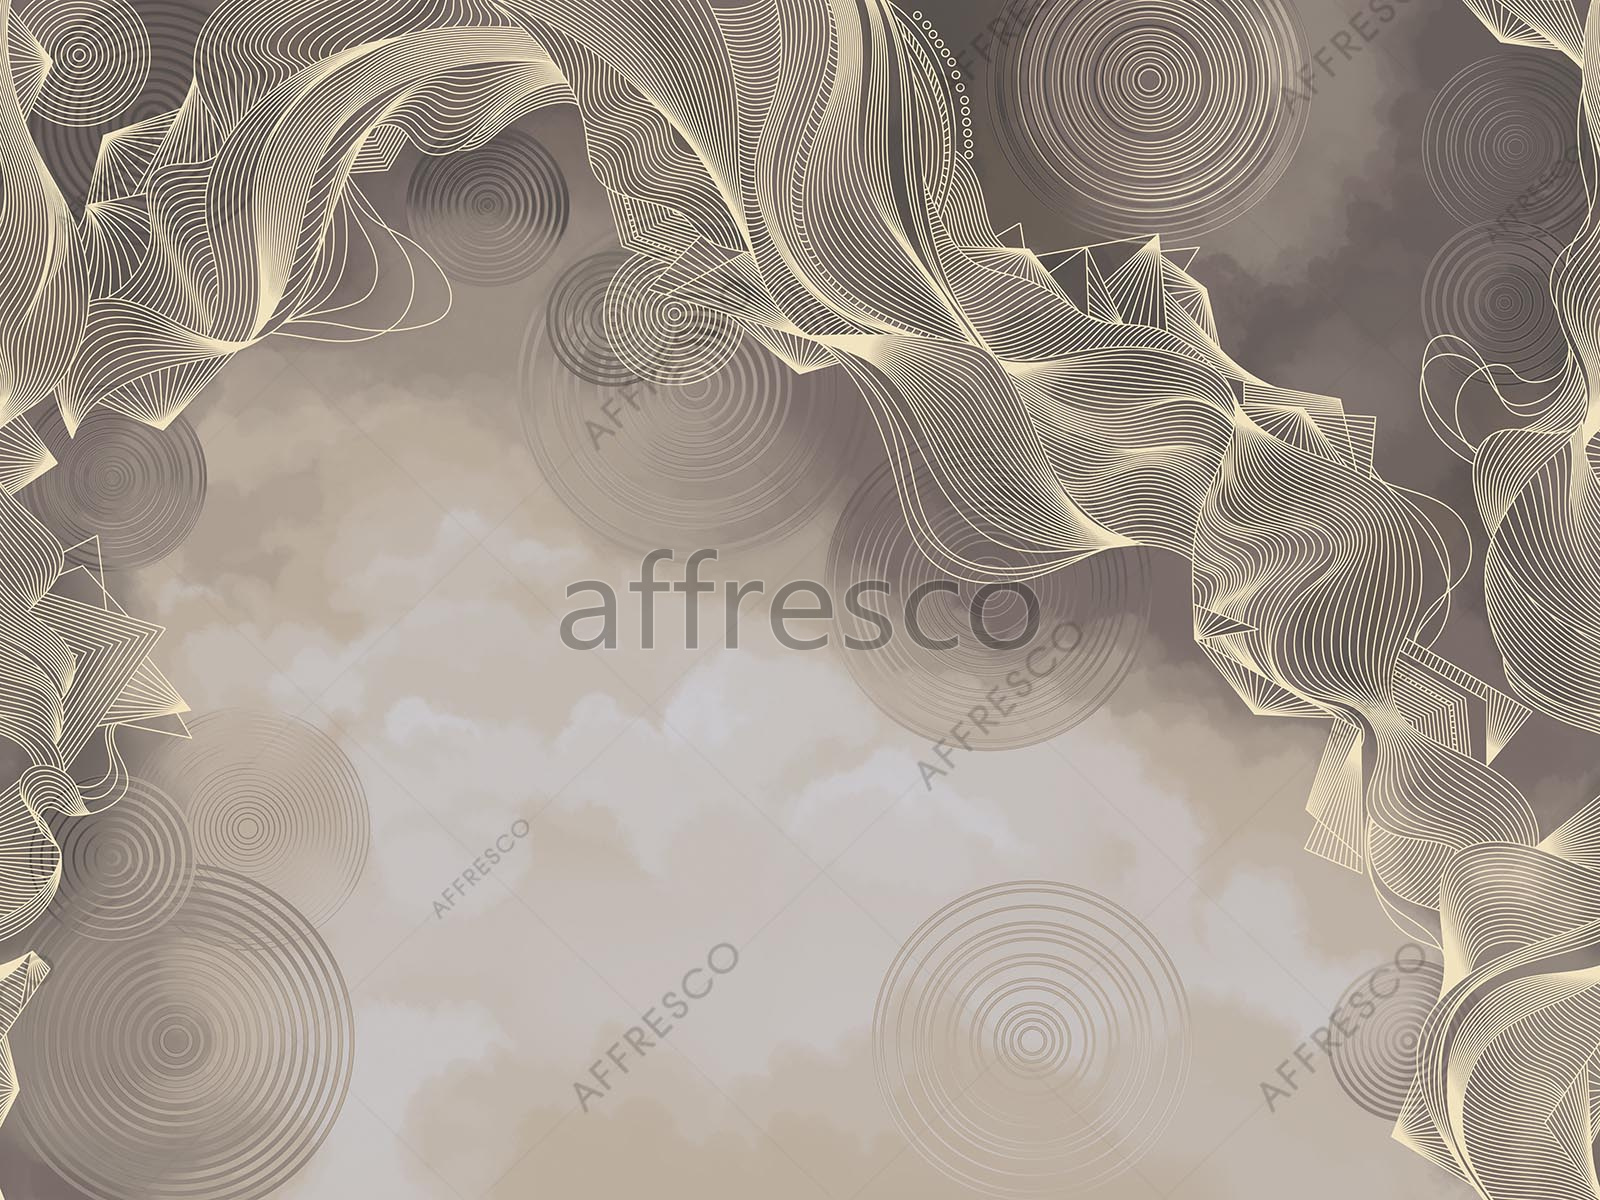 AF2134-COL1 | Line Art | Affresco Factory